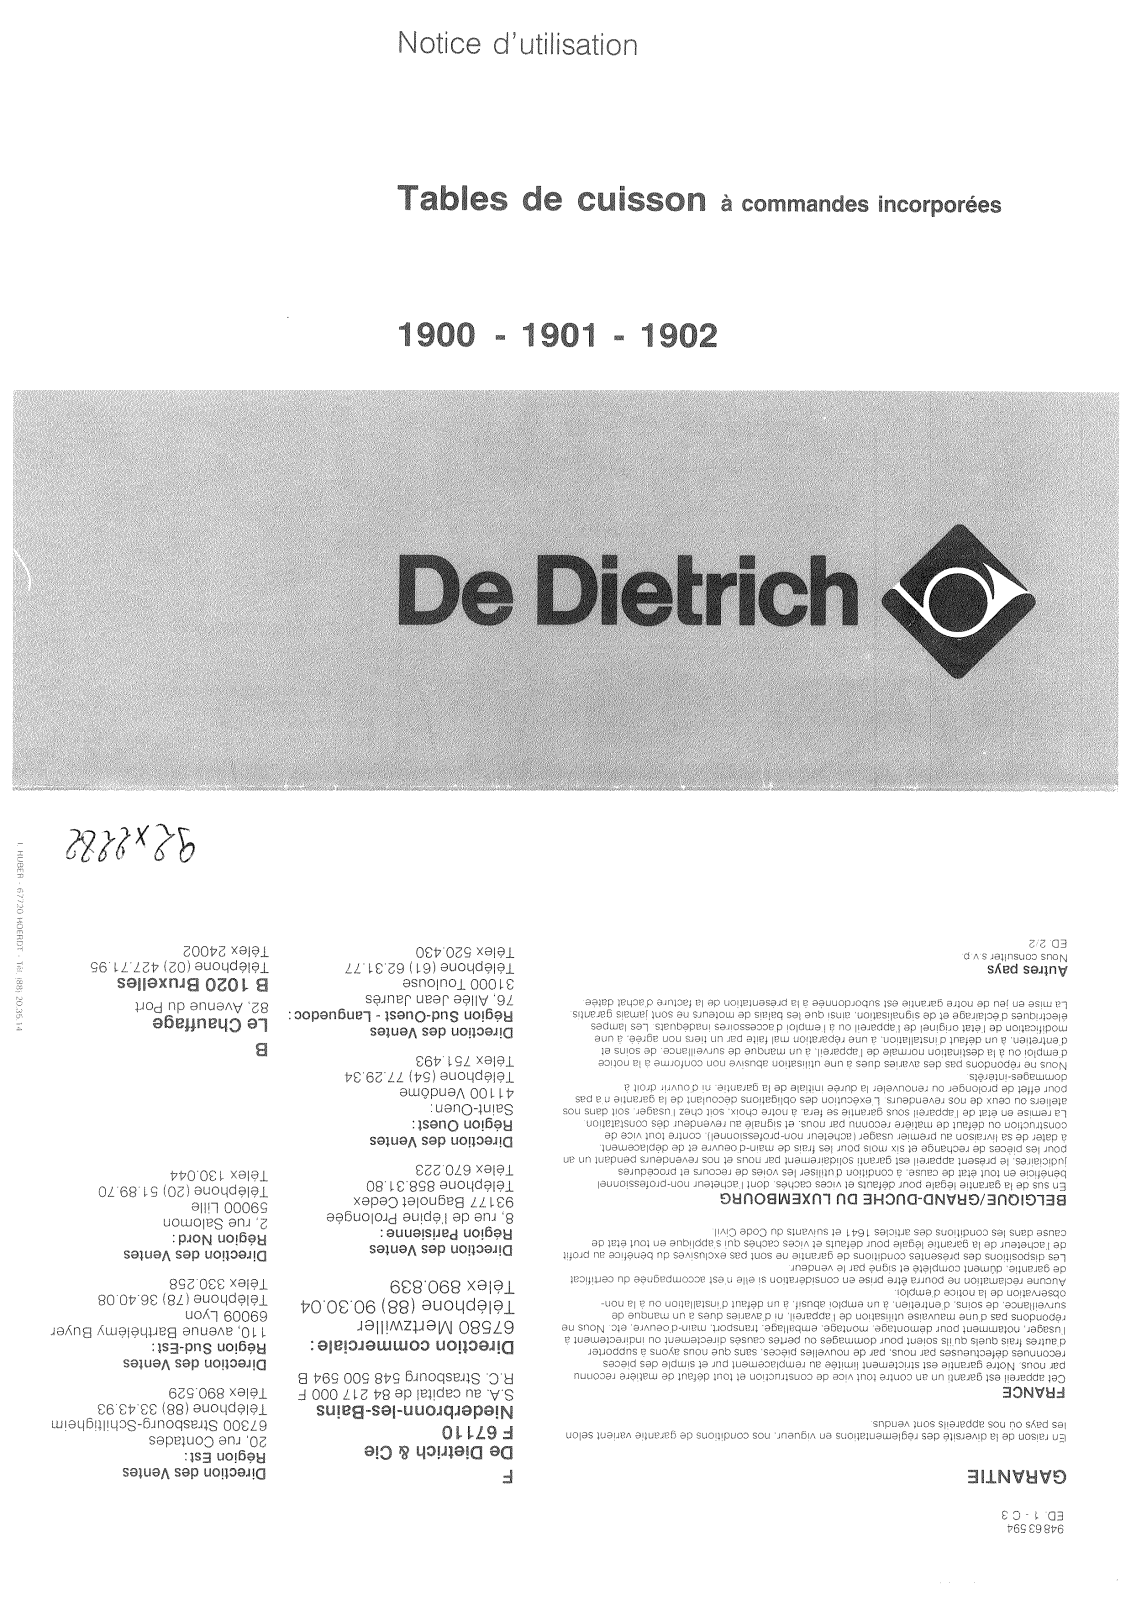 De dietrich 1901, 1902, 1900 User Manual